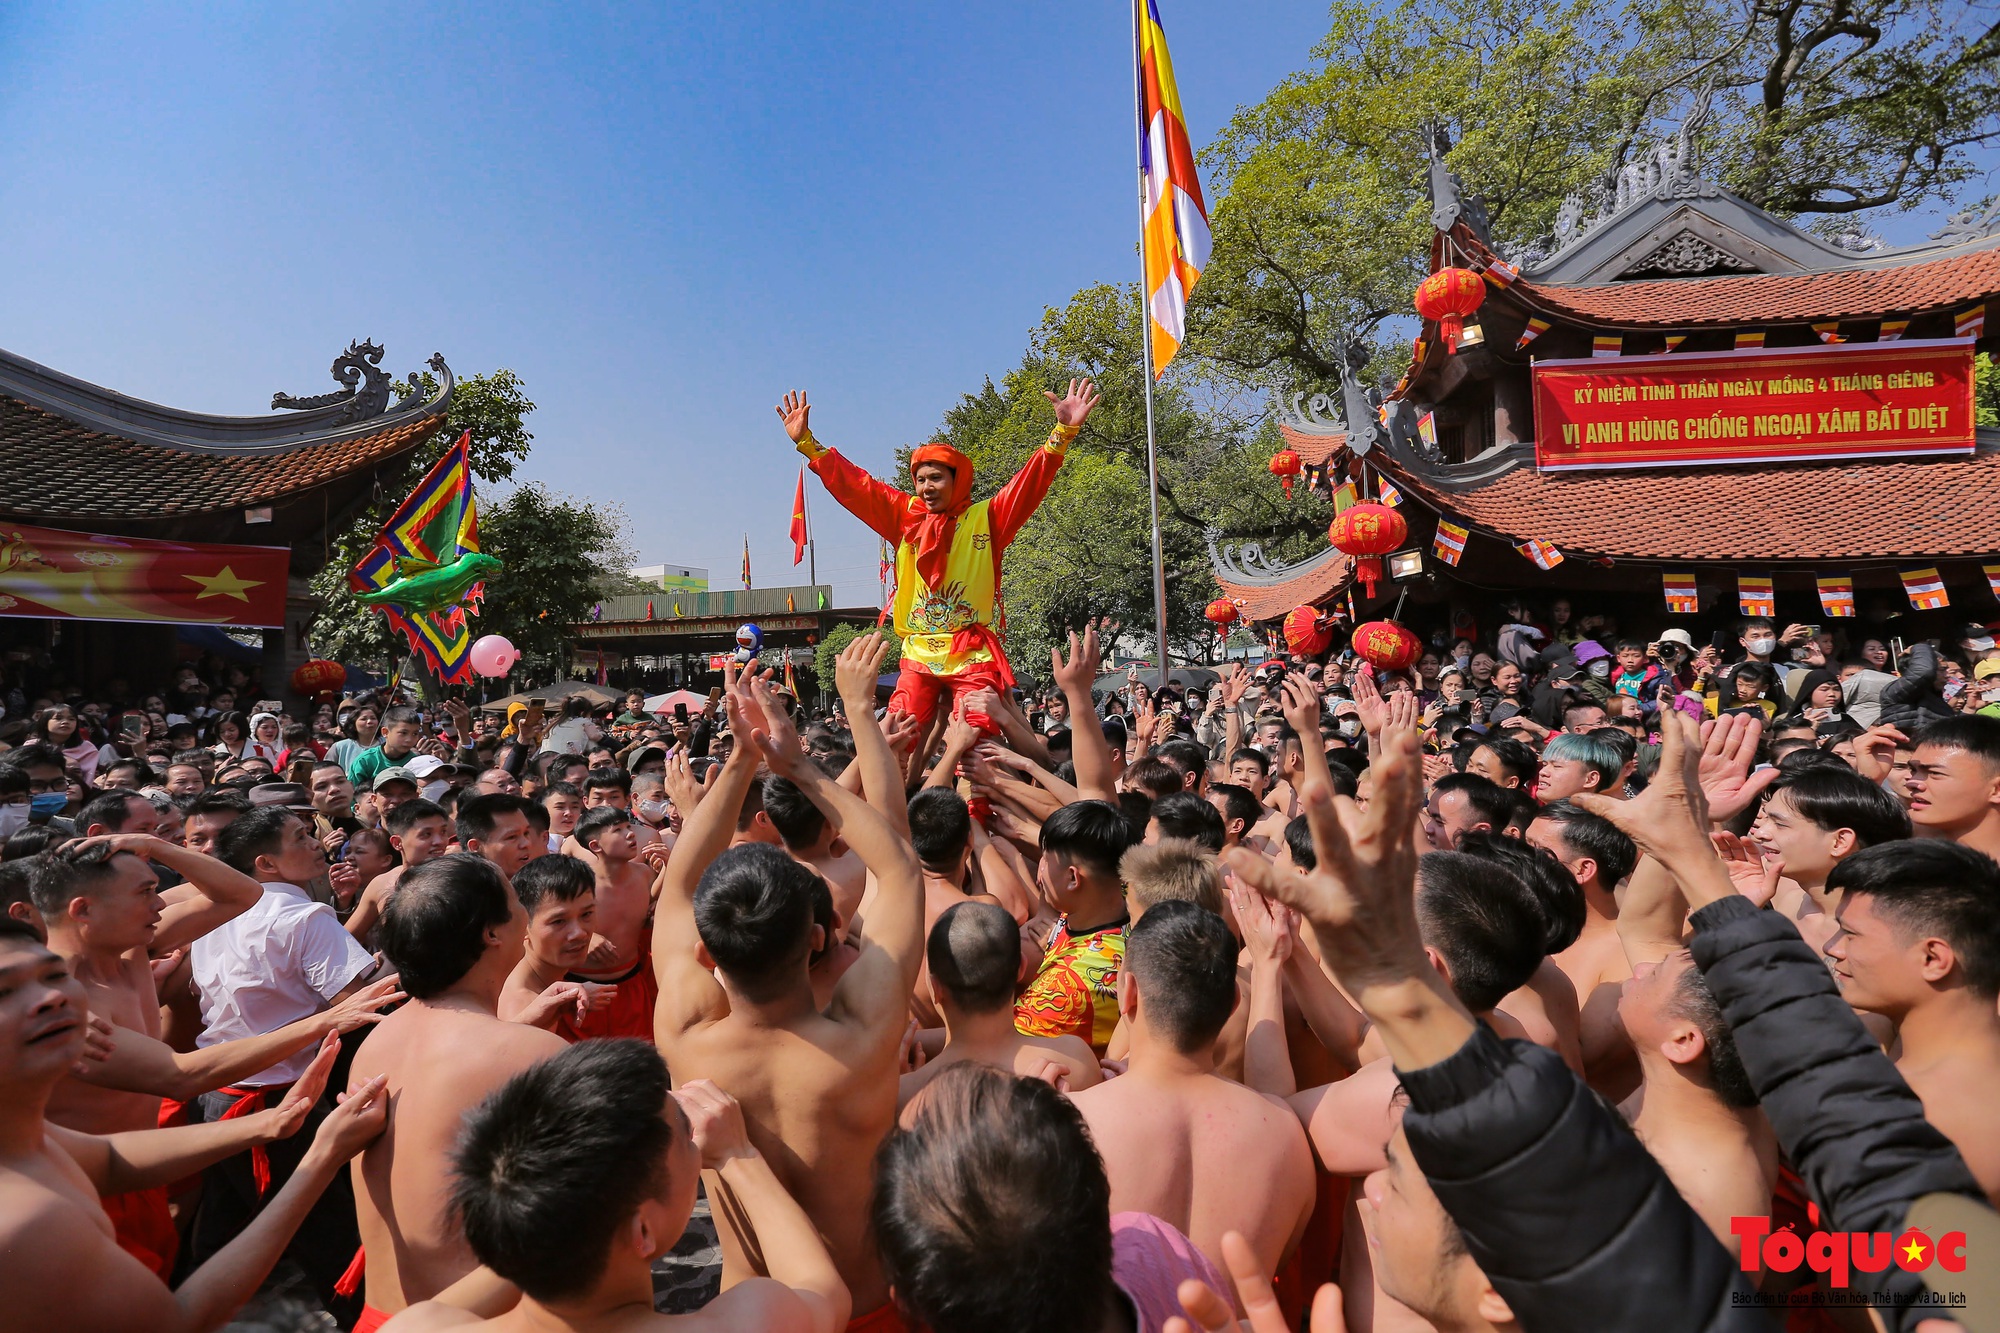 Tưng bừng, rộn ràng lễ hội rước pháo khổng lồ ở làng Đồng Kỵ - Ảnh 13.